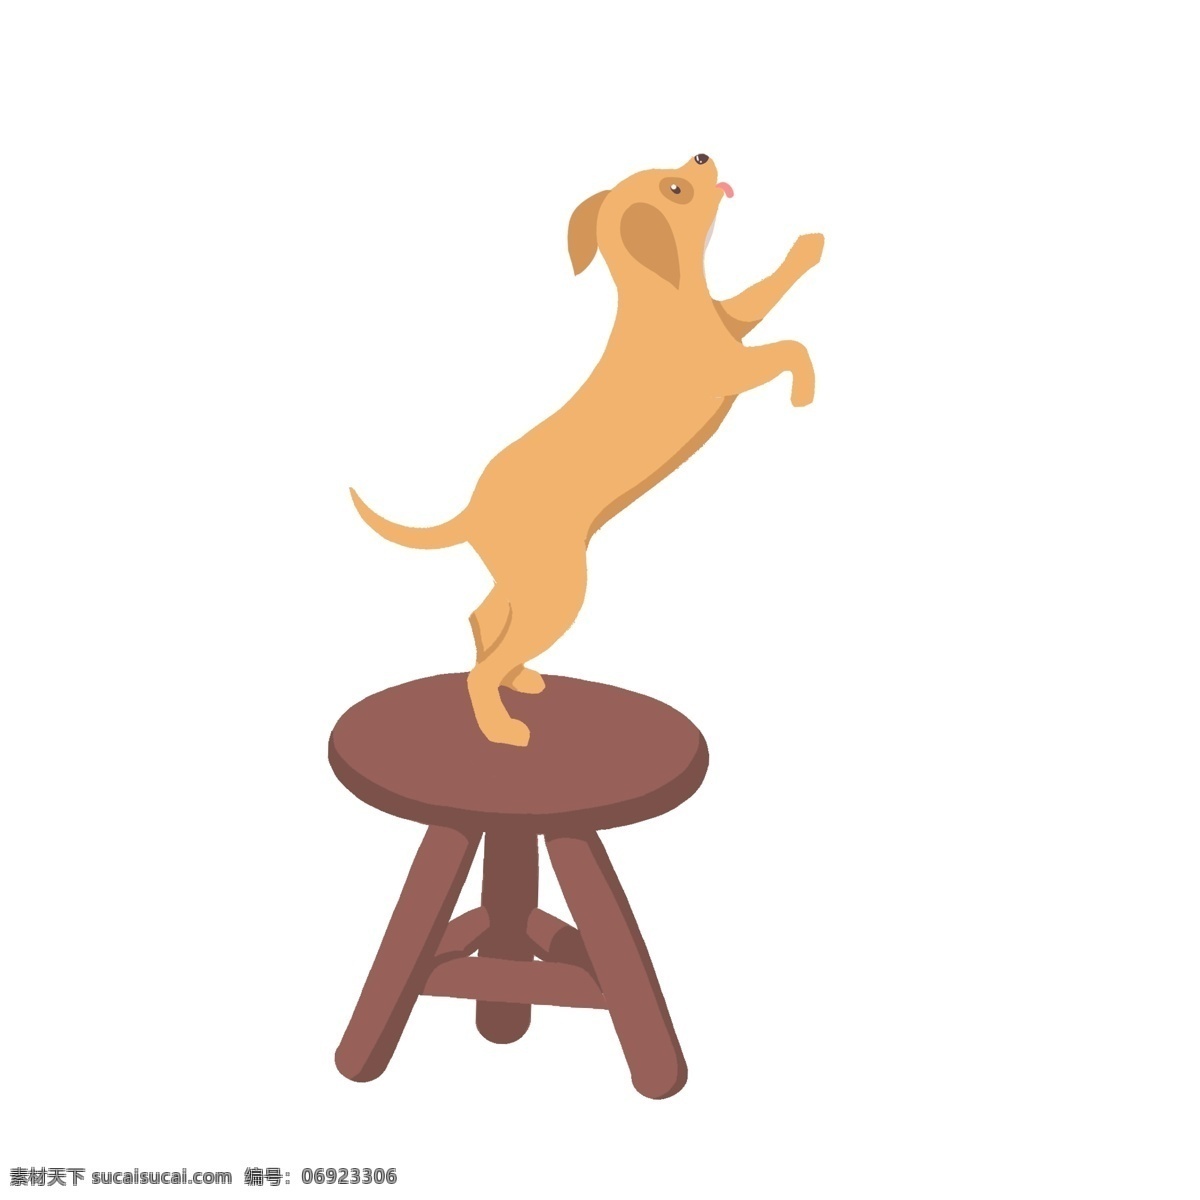 板凳 上 小狗 图案 元素 动物 椅子 椅子上的小狗 简约 创意元素 手绘元素 免抠元素